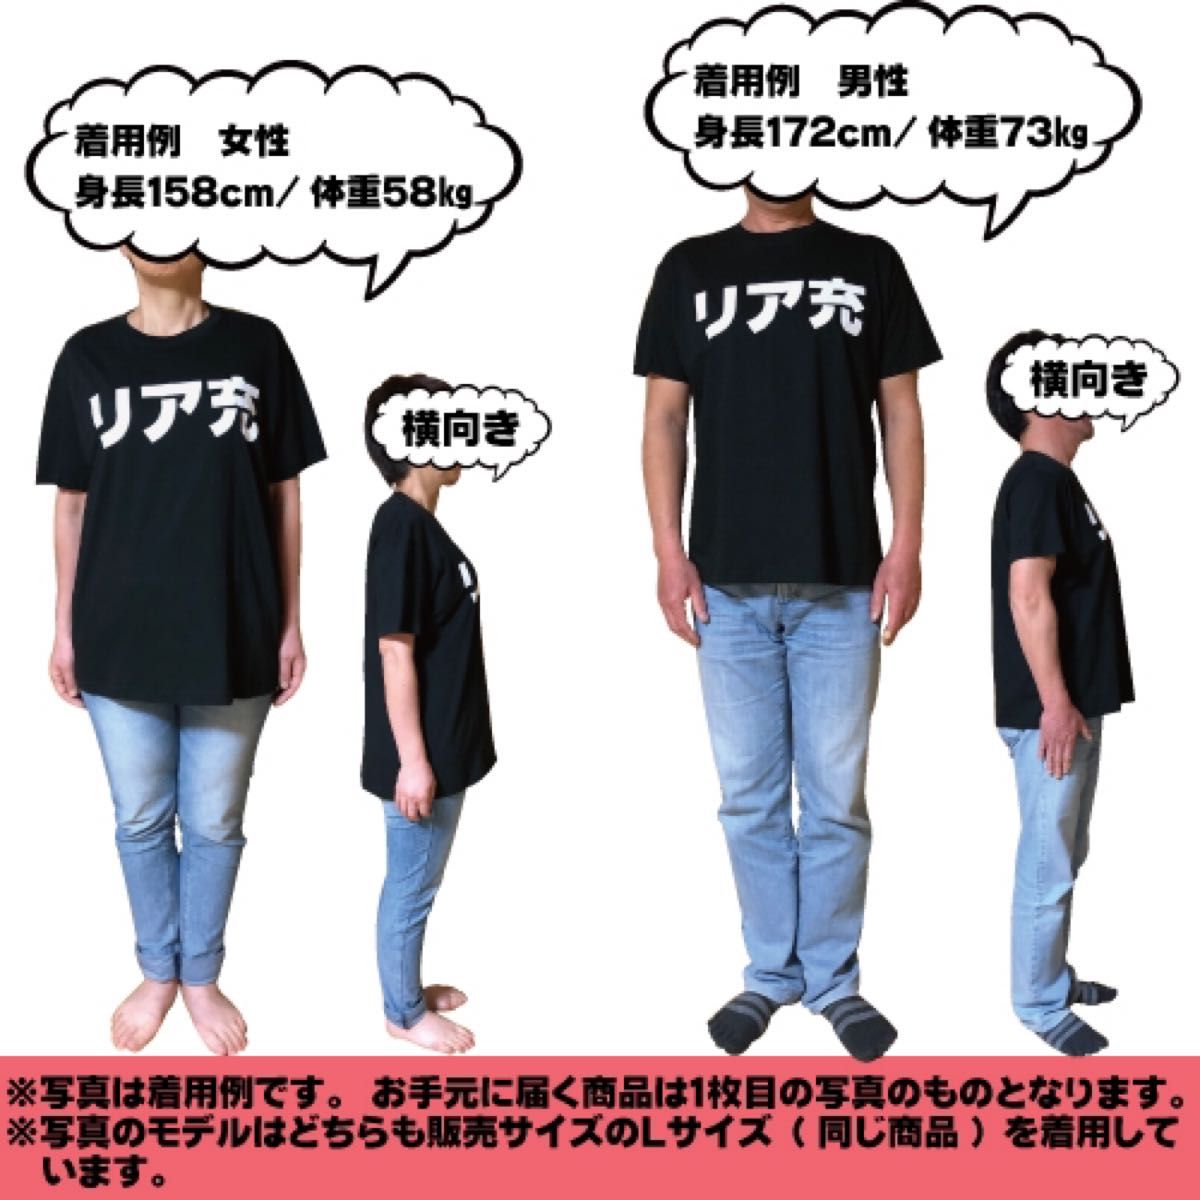 【新品】雑魚Tシャツ(L)